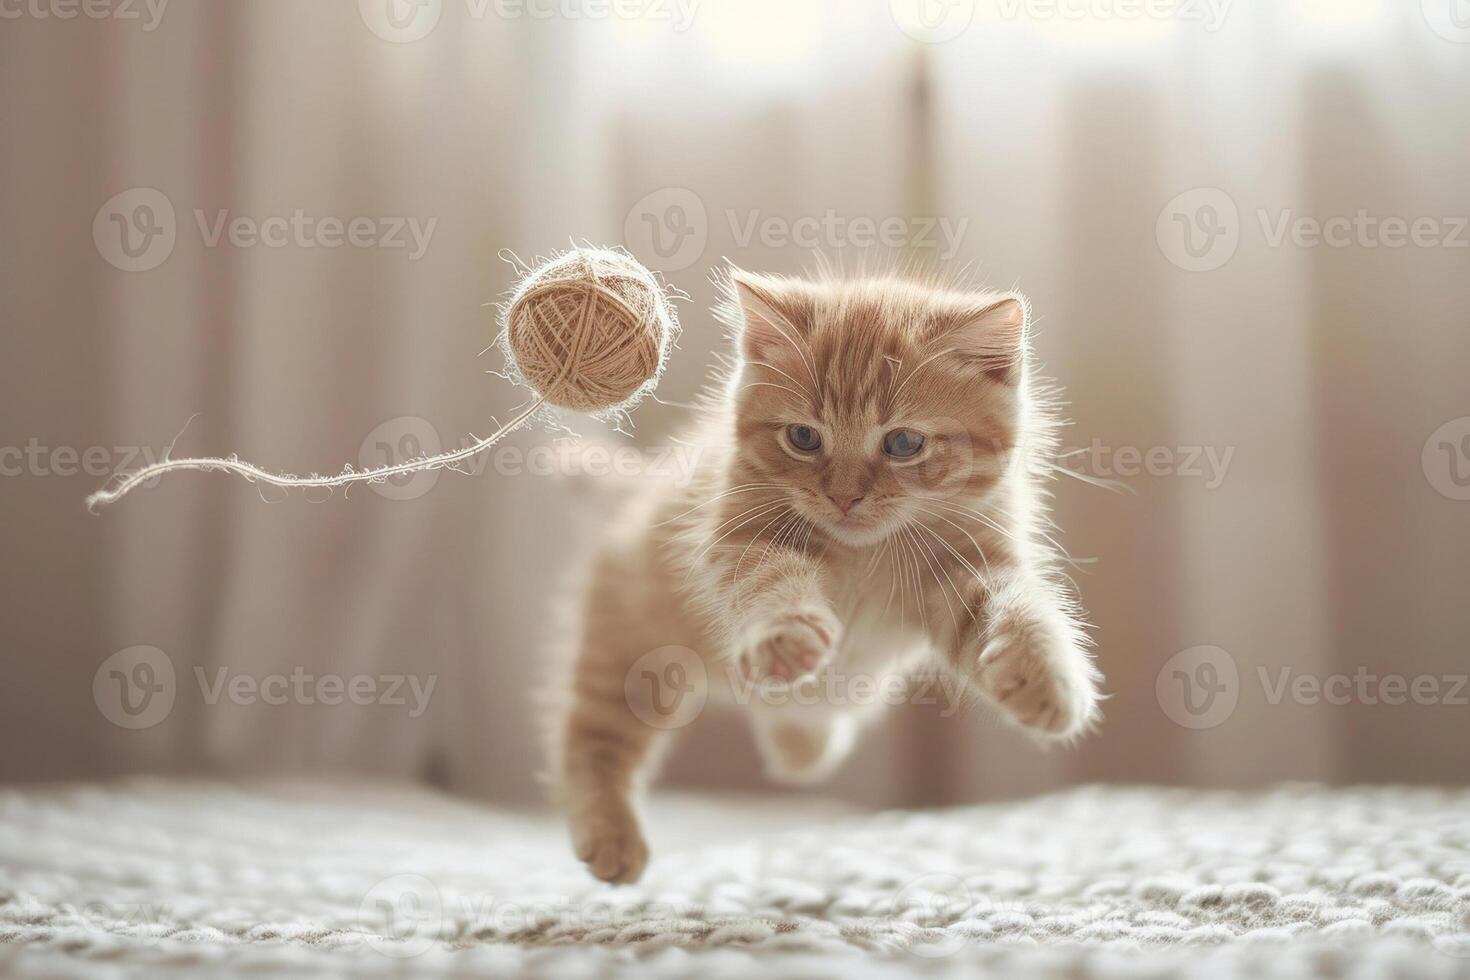 spielerisch Kätzchen Springen mit ein Ball von Garn, Mitte Aktion Schuss, feiern International Katze Tag foto